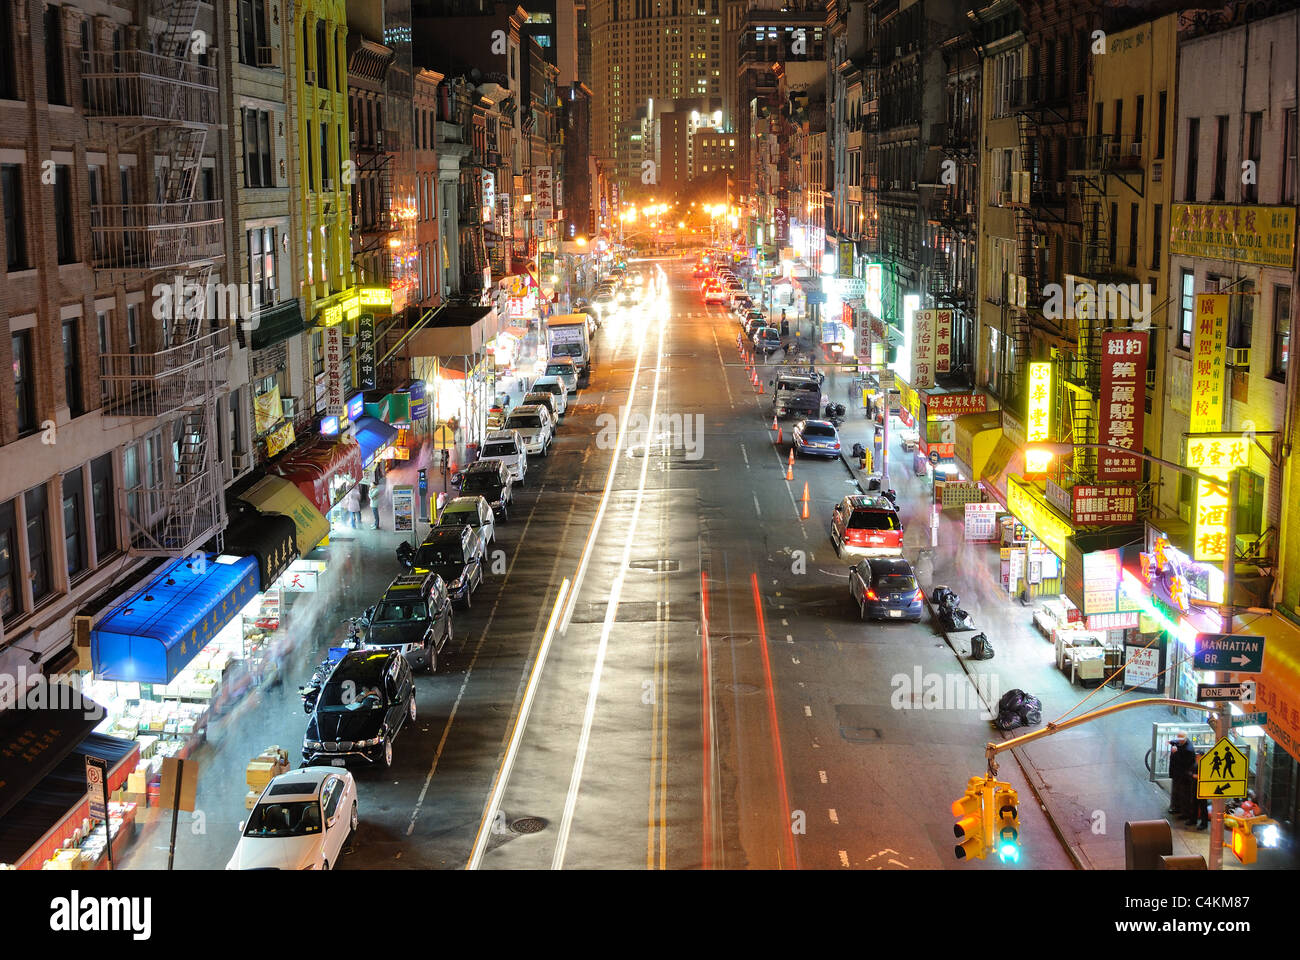 Une rue commerçante dans le quartier chinois, la ville de New York, la nuit. Le 24 octobre 2010. Banque D'Images